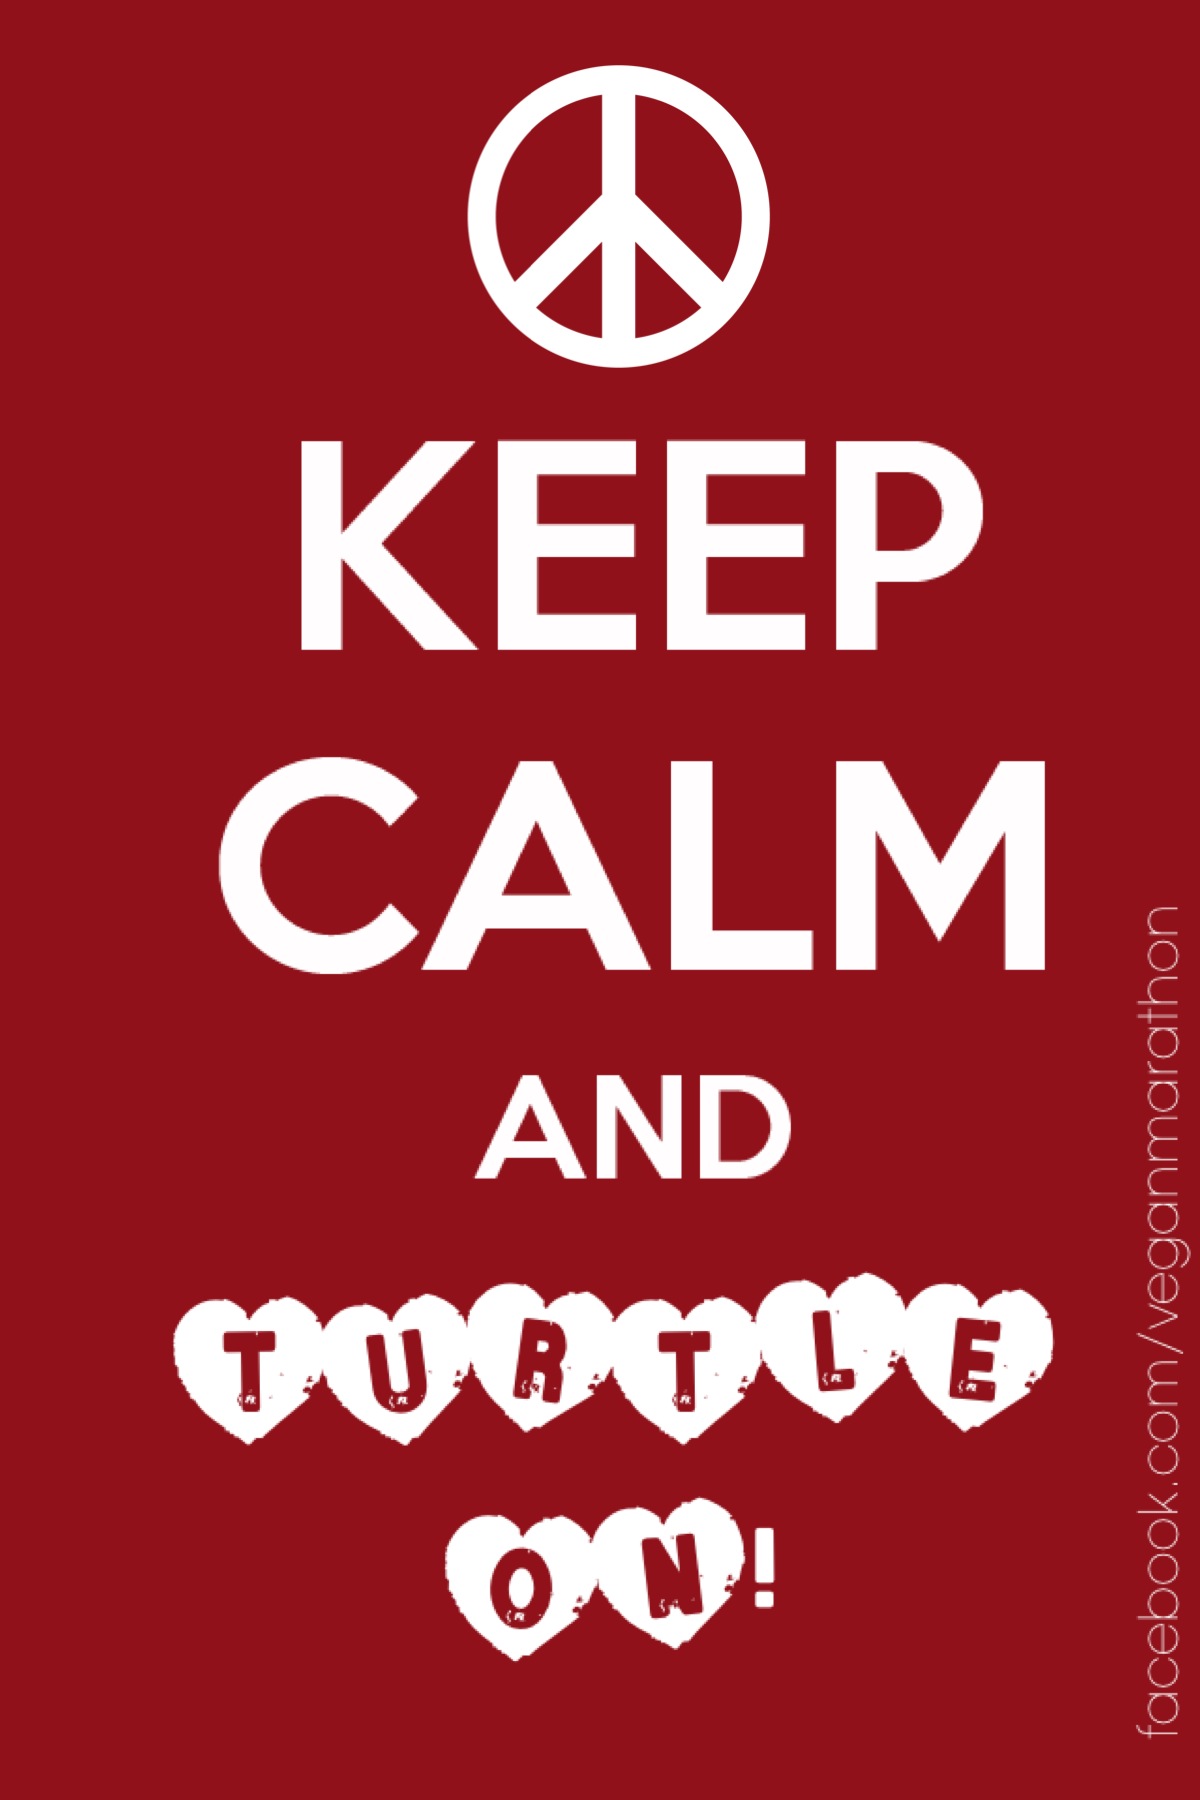 Keep calm! 